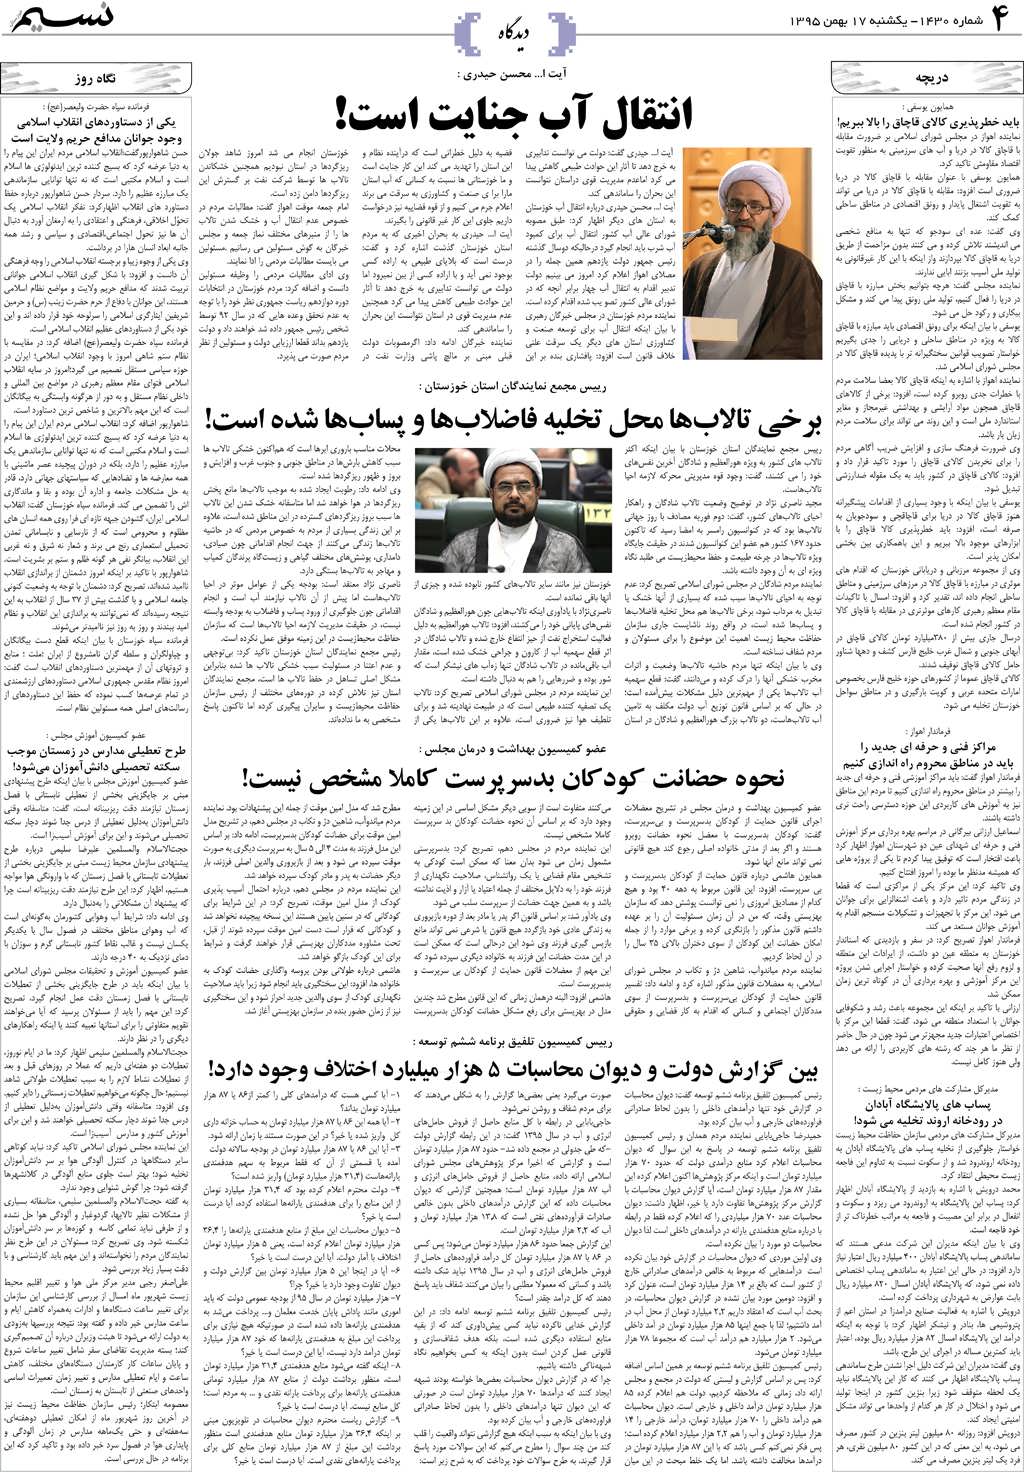 صفحه دیدگاه روزنامه نسیم شماره 1430